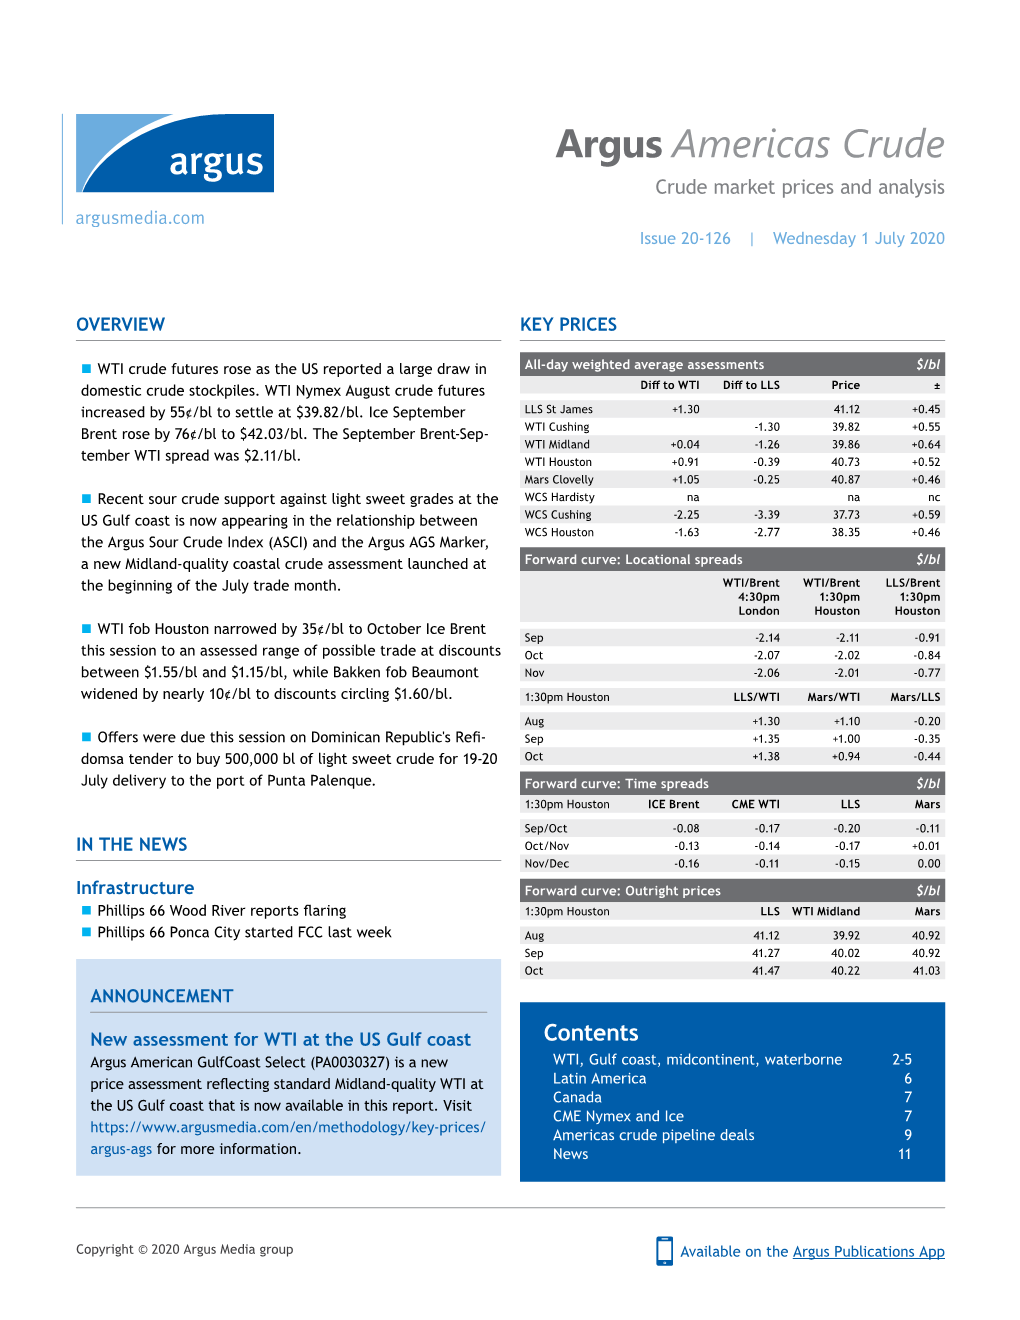 Sample Report: Argus Americas Crude